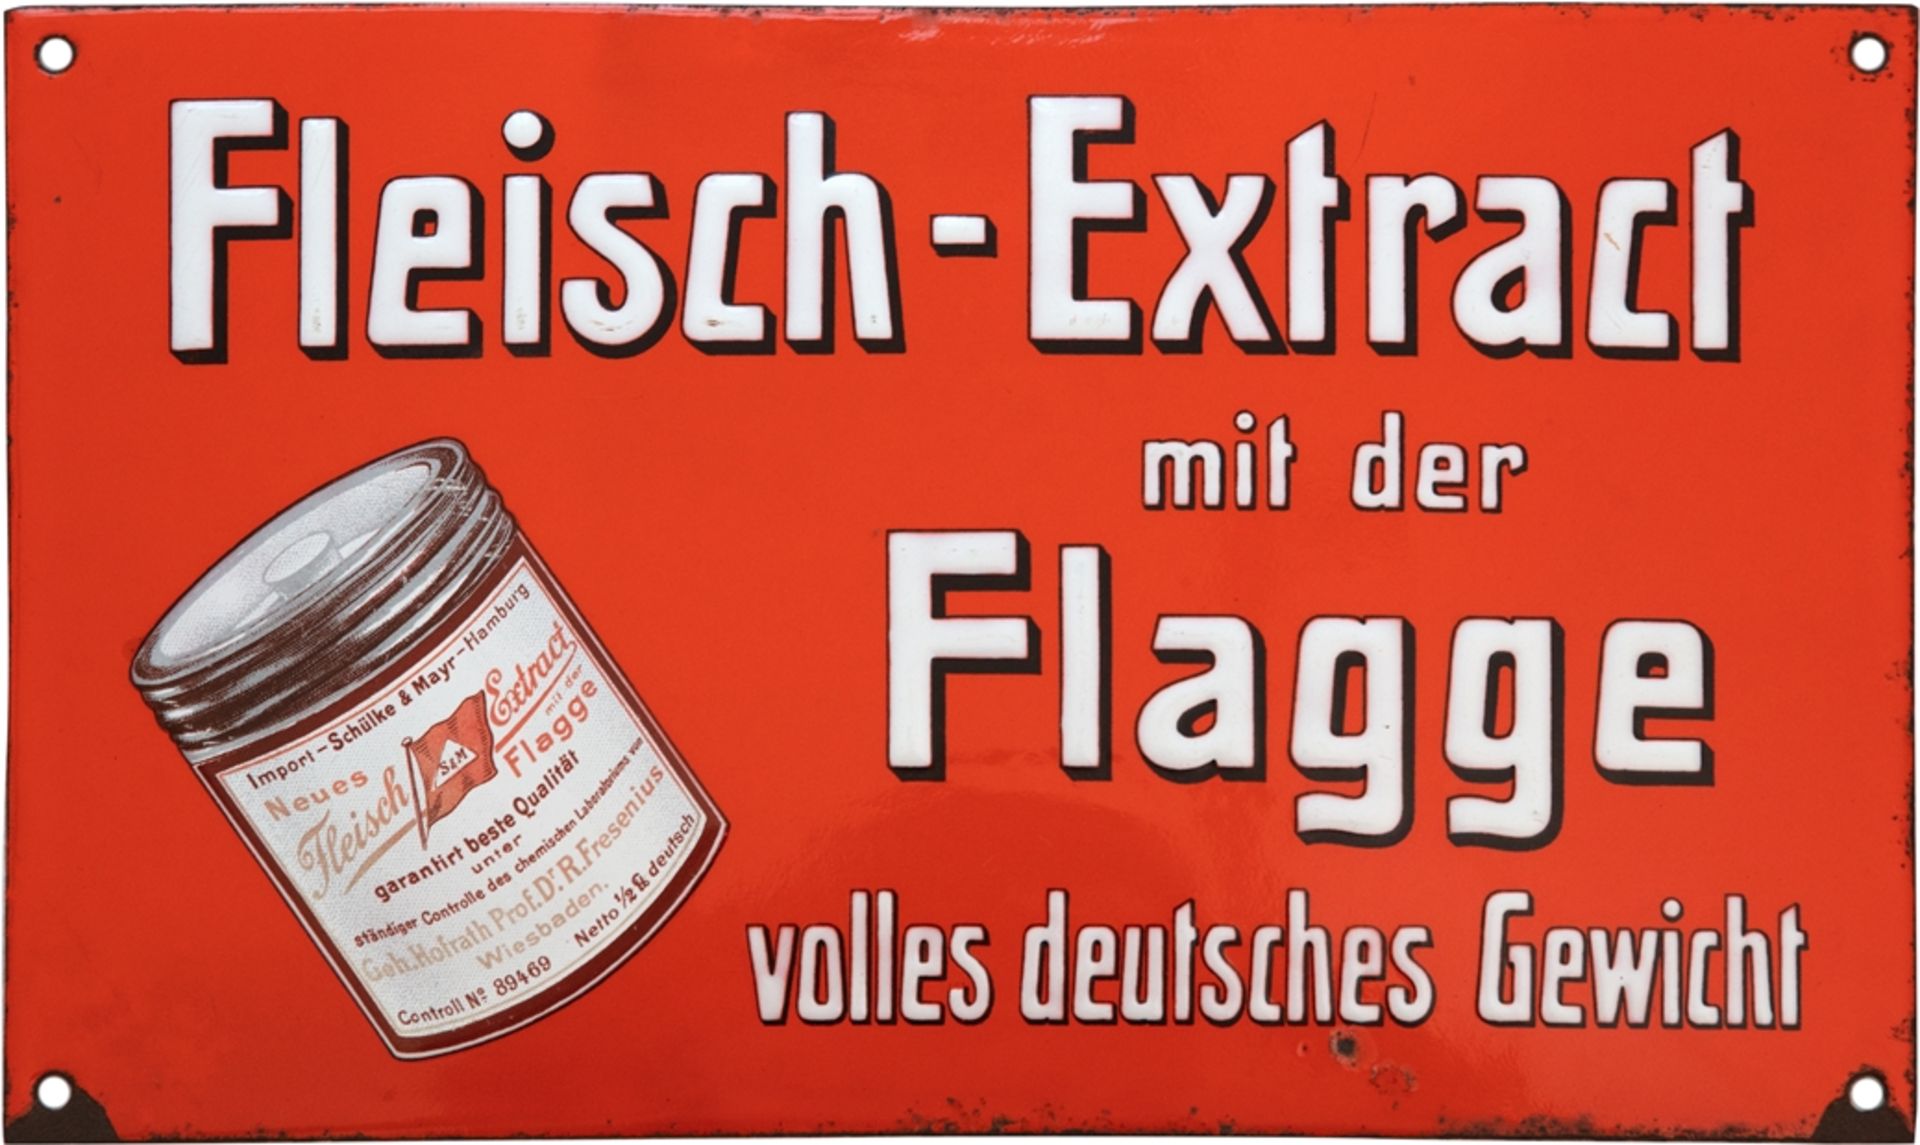 Emailschild Fleisch Extract mit der Flagge, Hamburg, um 1900